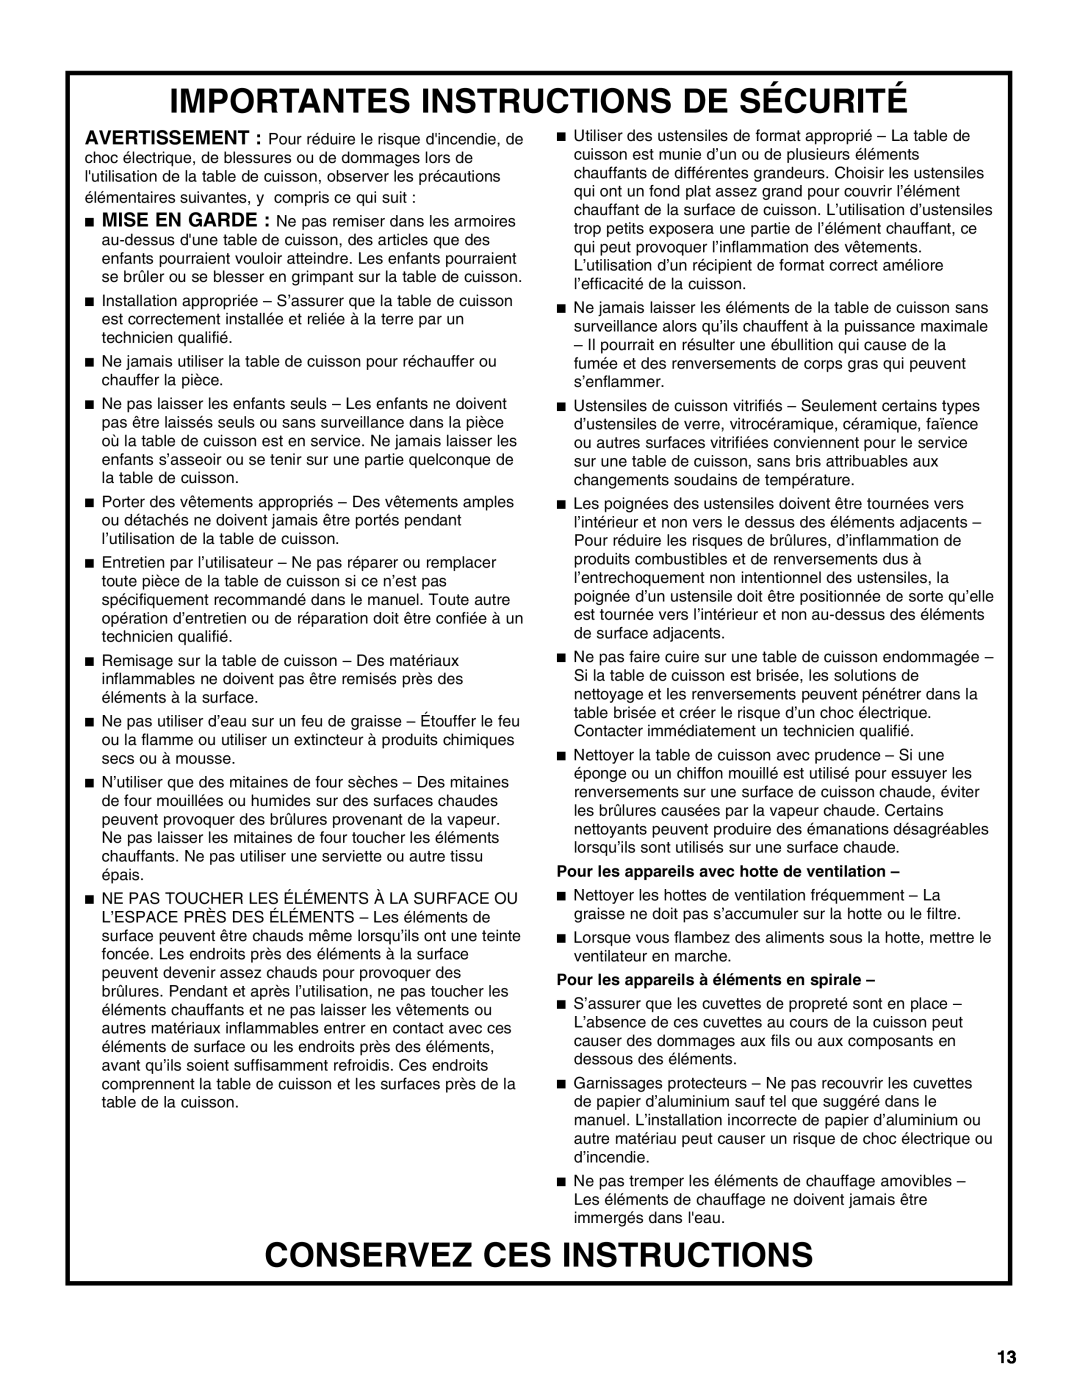 KitchenAid KICU568S, KICU508S manual Importantes Instructions De Sécurité, Conservez Ces Instructions 